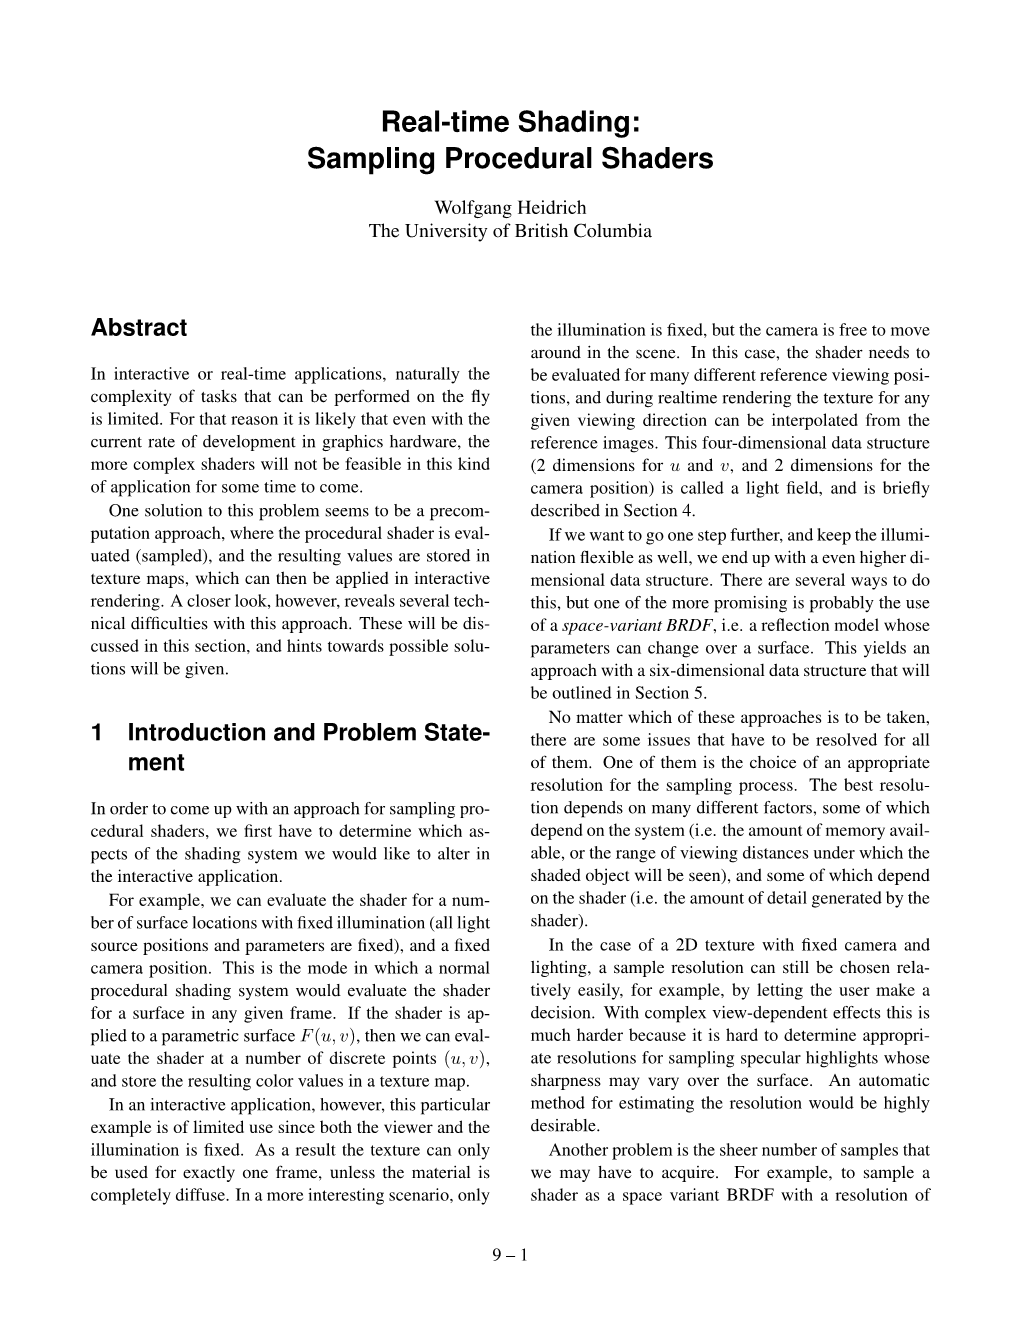 Real-Time Shading: Sampling Procedural Shaders